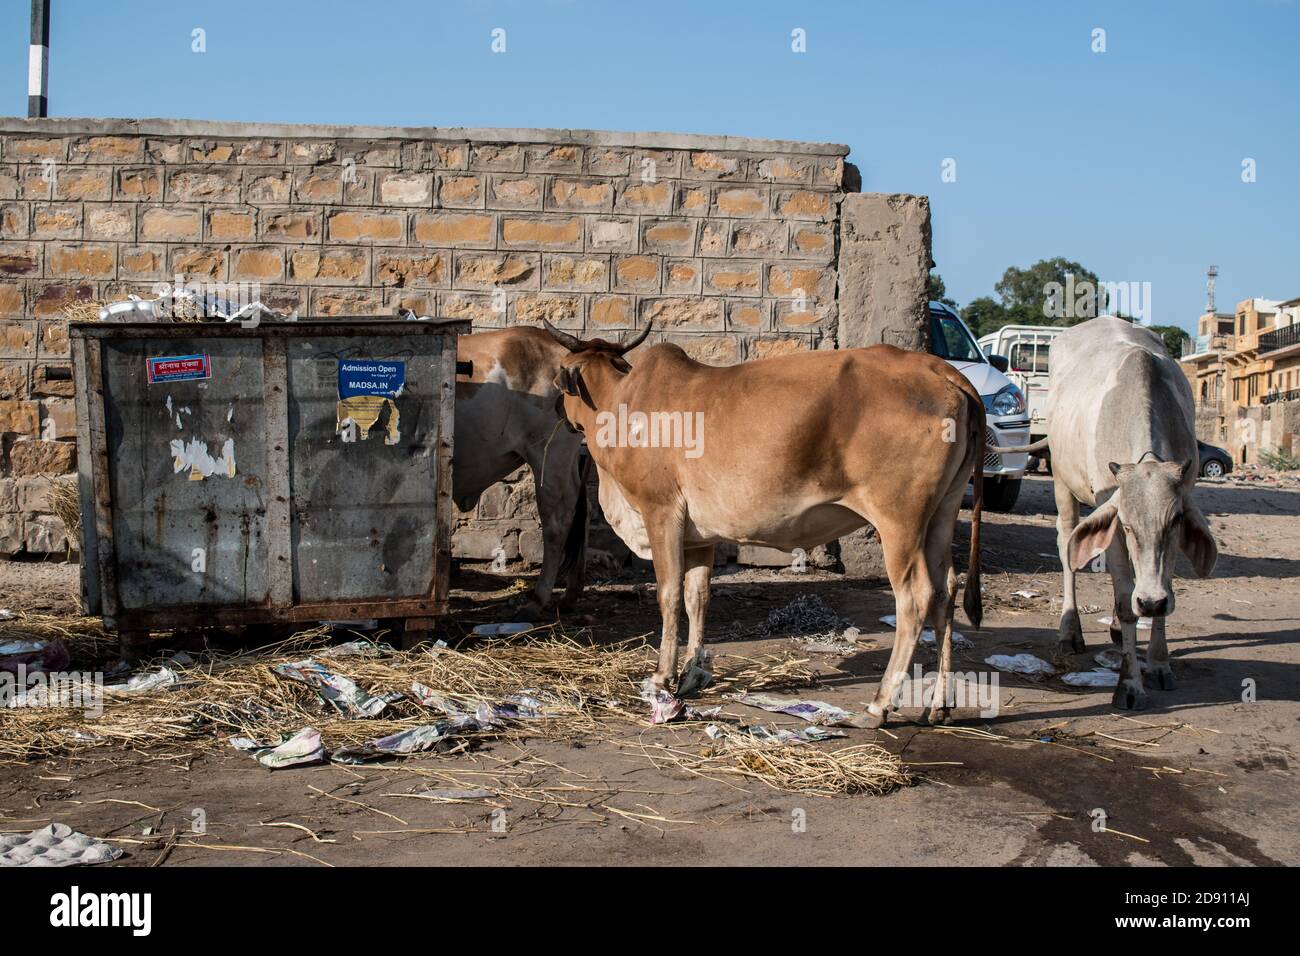 Vacas vagas comiendo basura de un cubo de basura Foto de stock